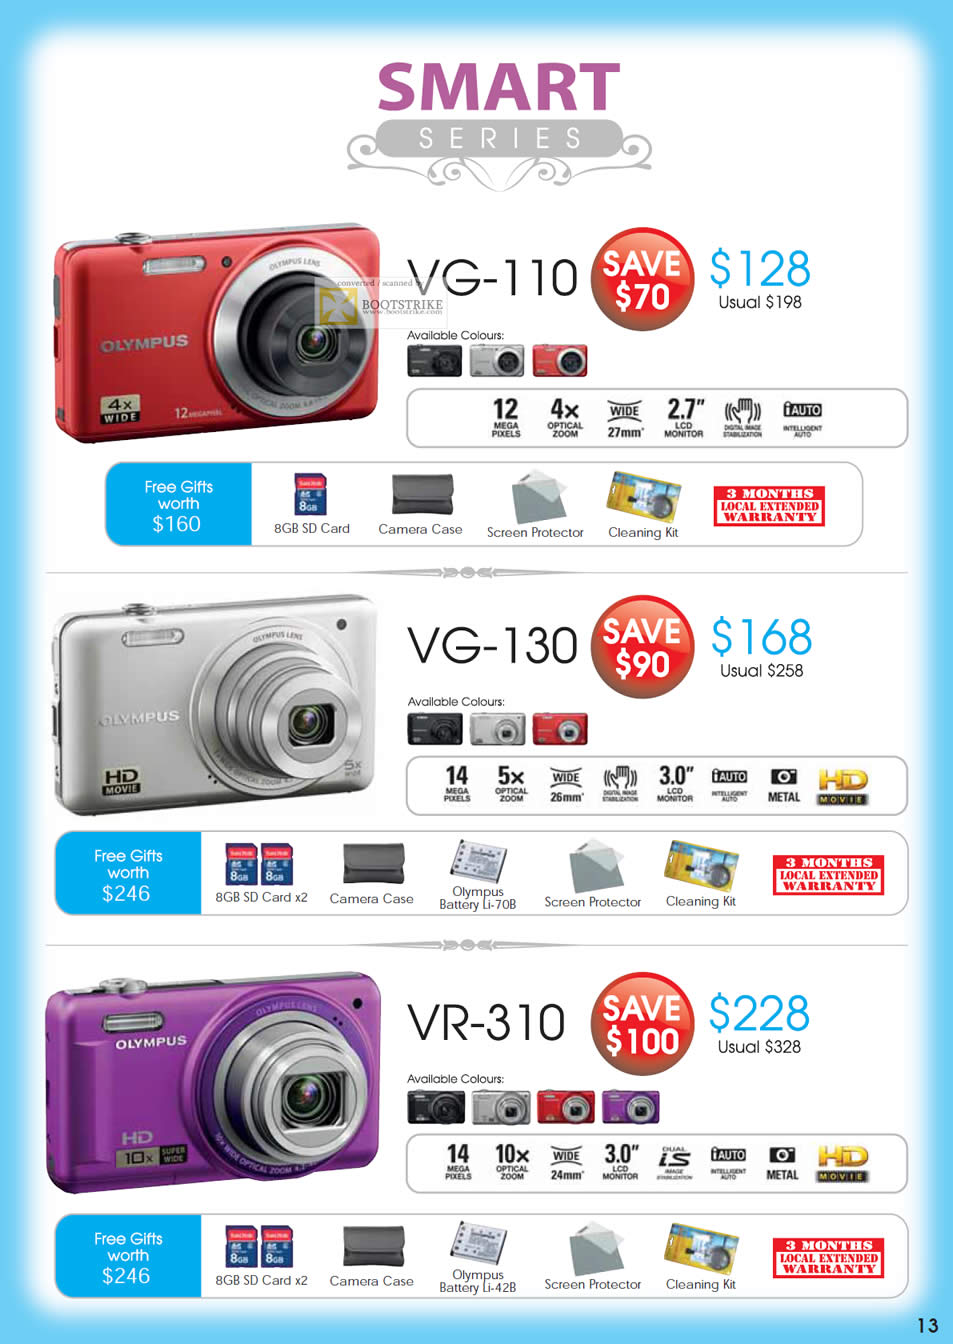 SITEX 2011 price list image brochure of Olympus Digital Cameras Smart Series VG-110, VG-130, VR-310